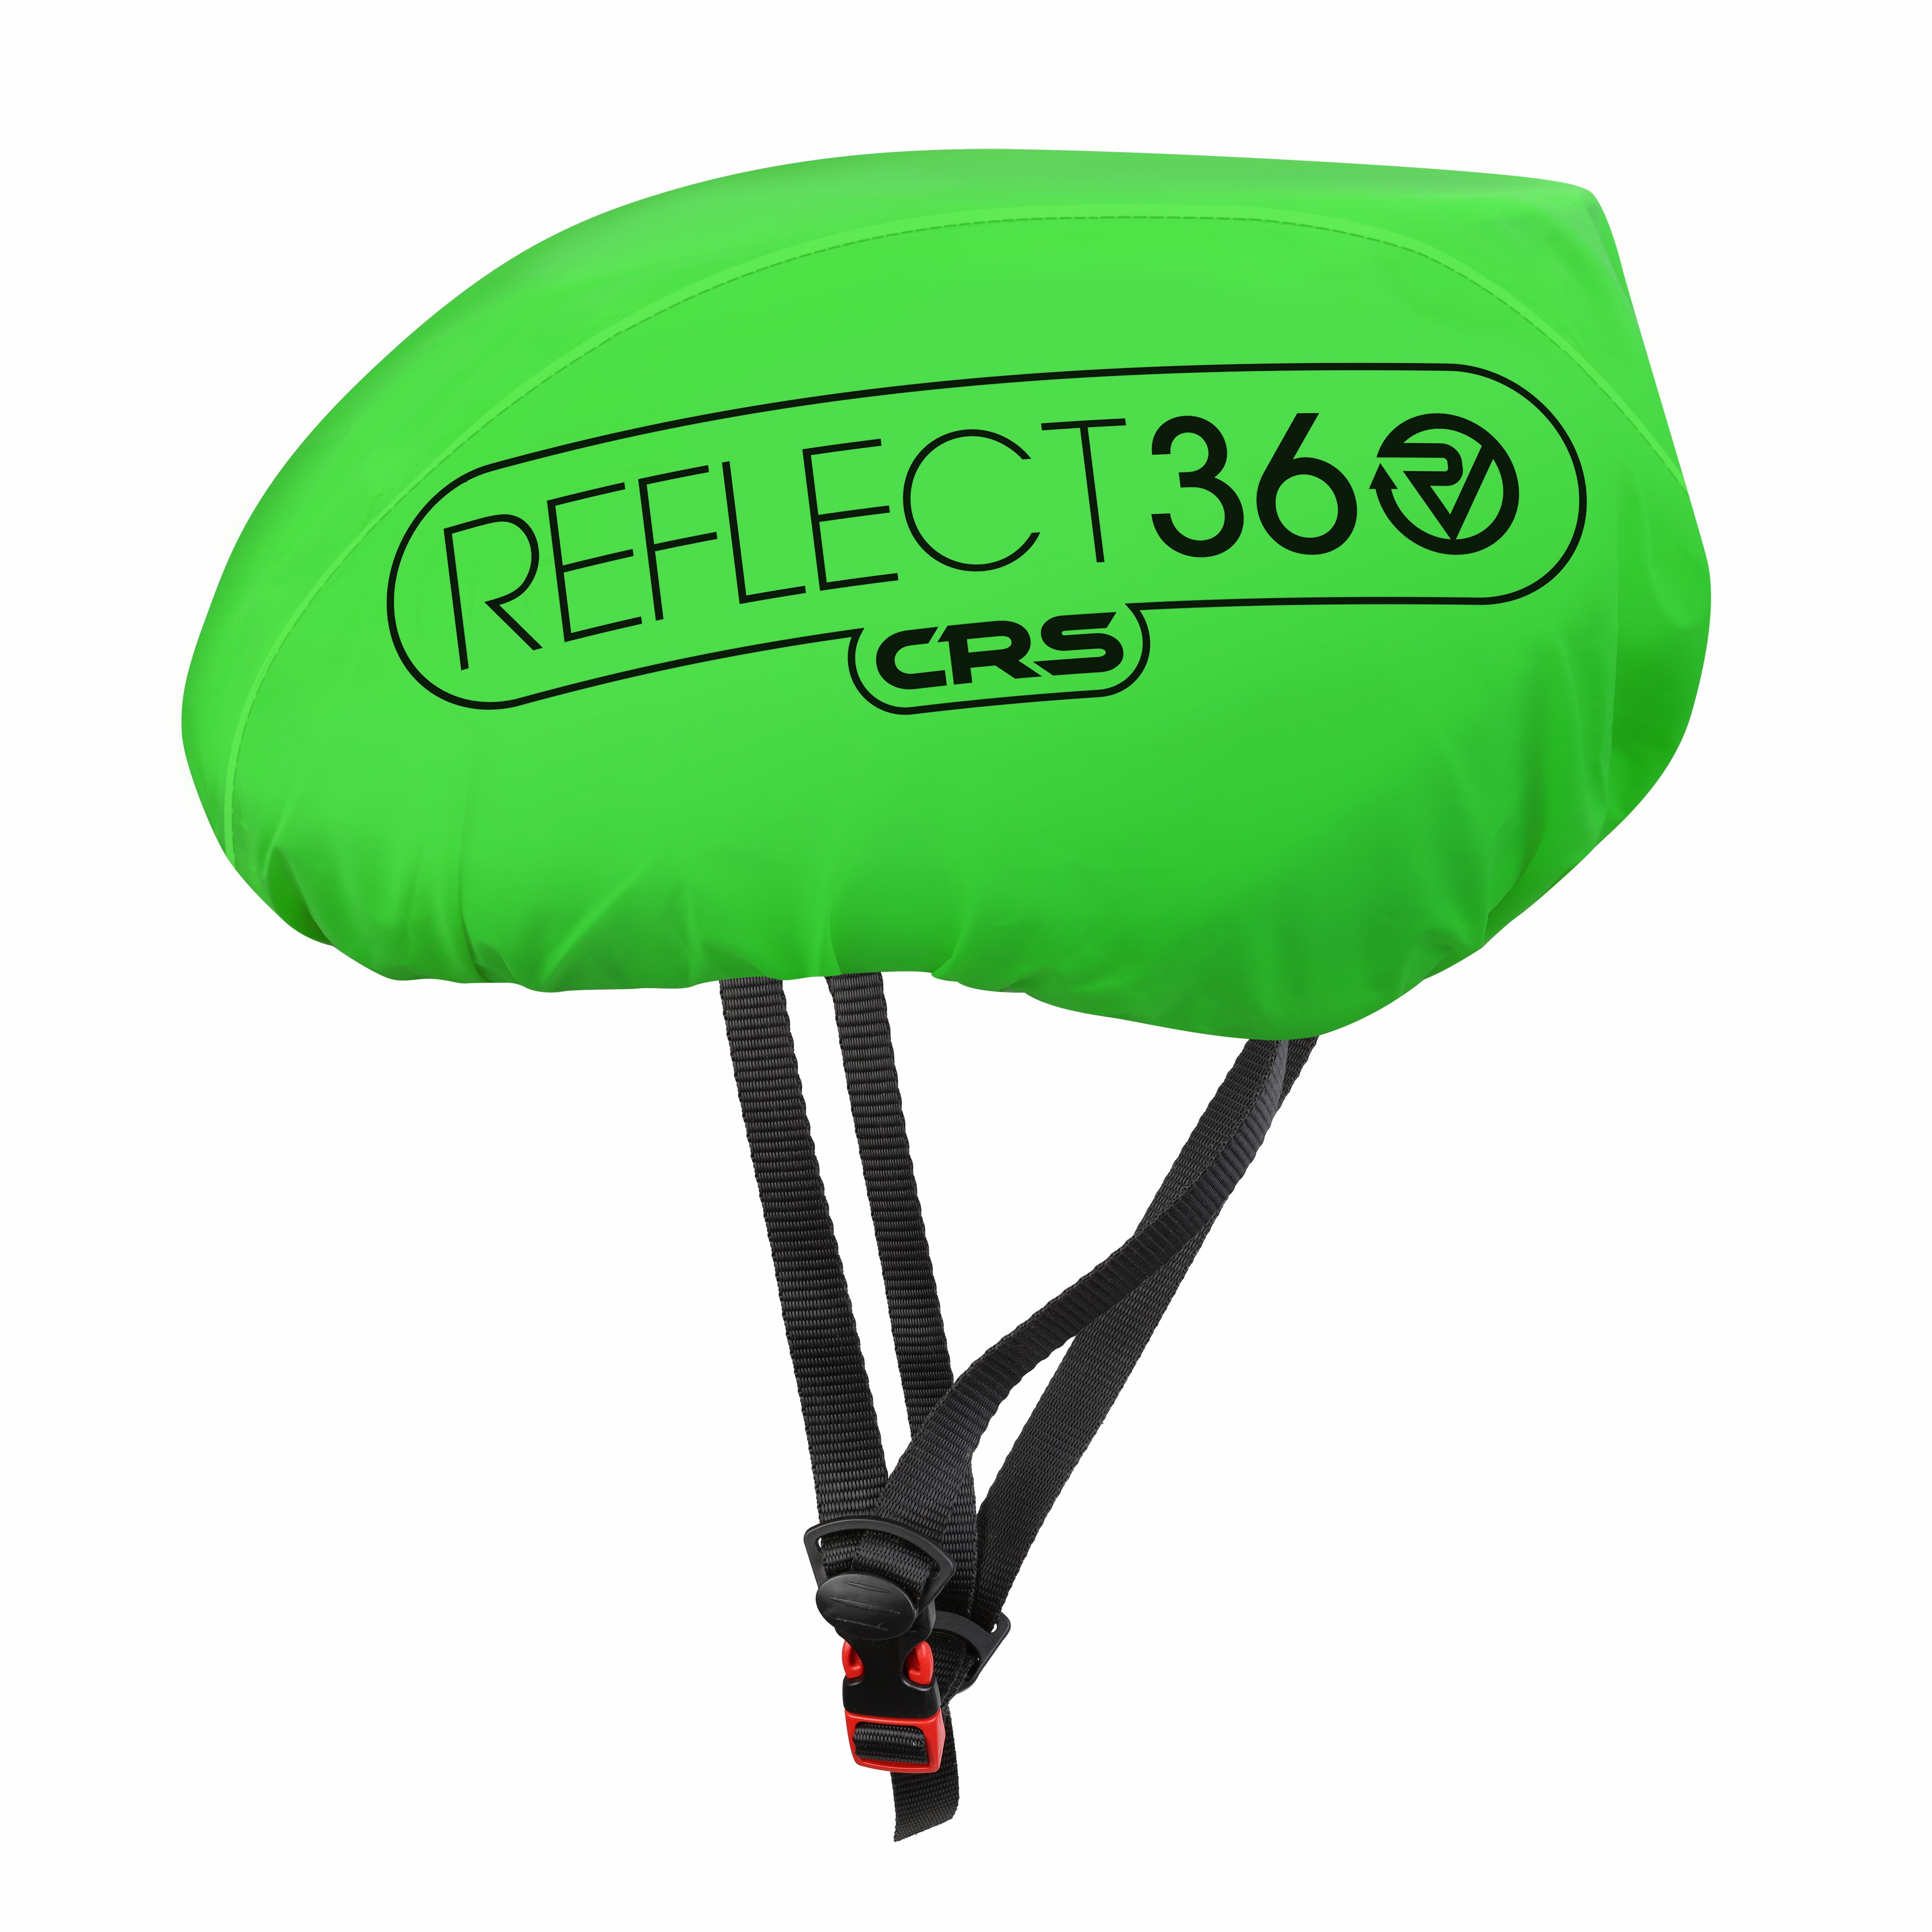 PROVIZ REFLECT360 CRS HELMET COVER